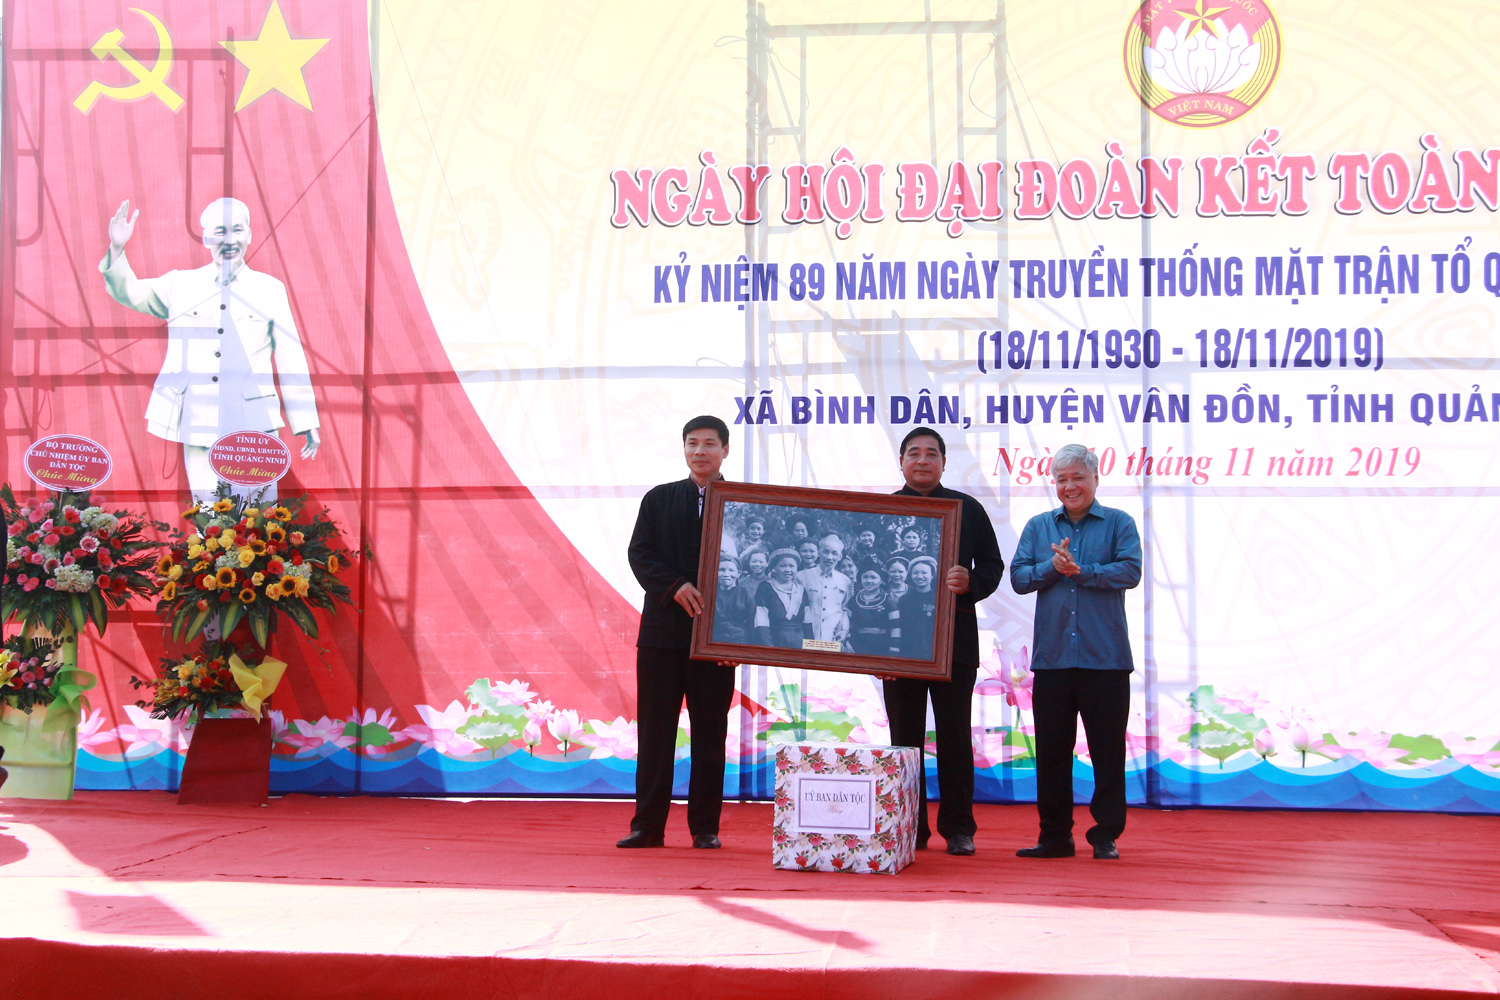 Đồng chí Đỗ Văn Chiến, Ủy viên Trung ương Đảng, Bộ trưởng, Chủ nhiệm Ủy ban Dân tộc, tặng quà cho Đảng ủy, HĐND, UBND, Ủy ban MTTQ xã Bình Dân.